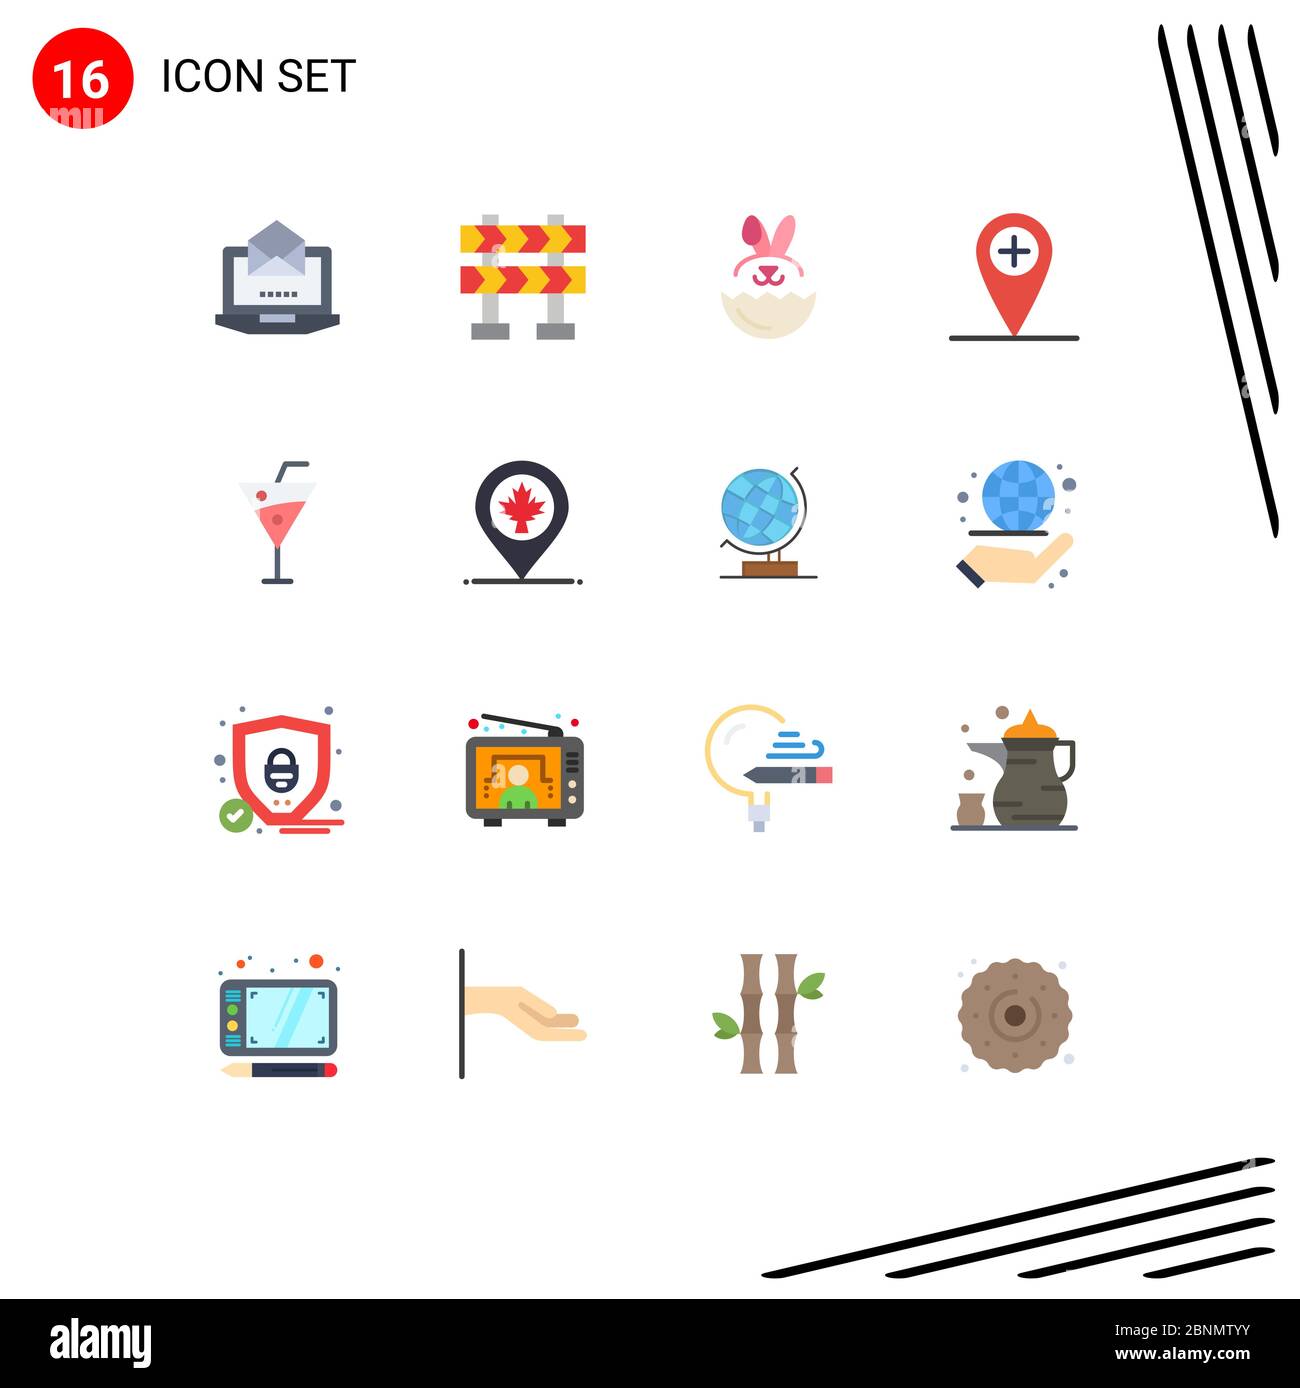 16 concetto di colore piatto per i siti web Mappa mobile e delle applicazioni, bevande, robbit, Beach drink, location Editable Pack of Creative Vector Design Elements Illustrazione Vettoriale